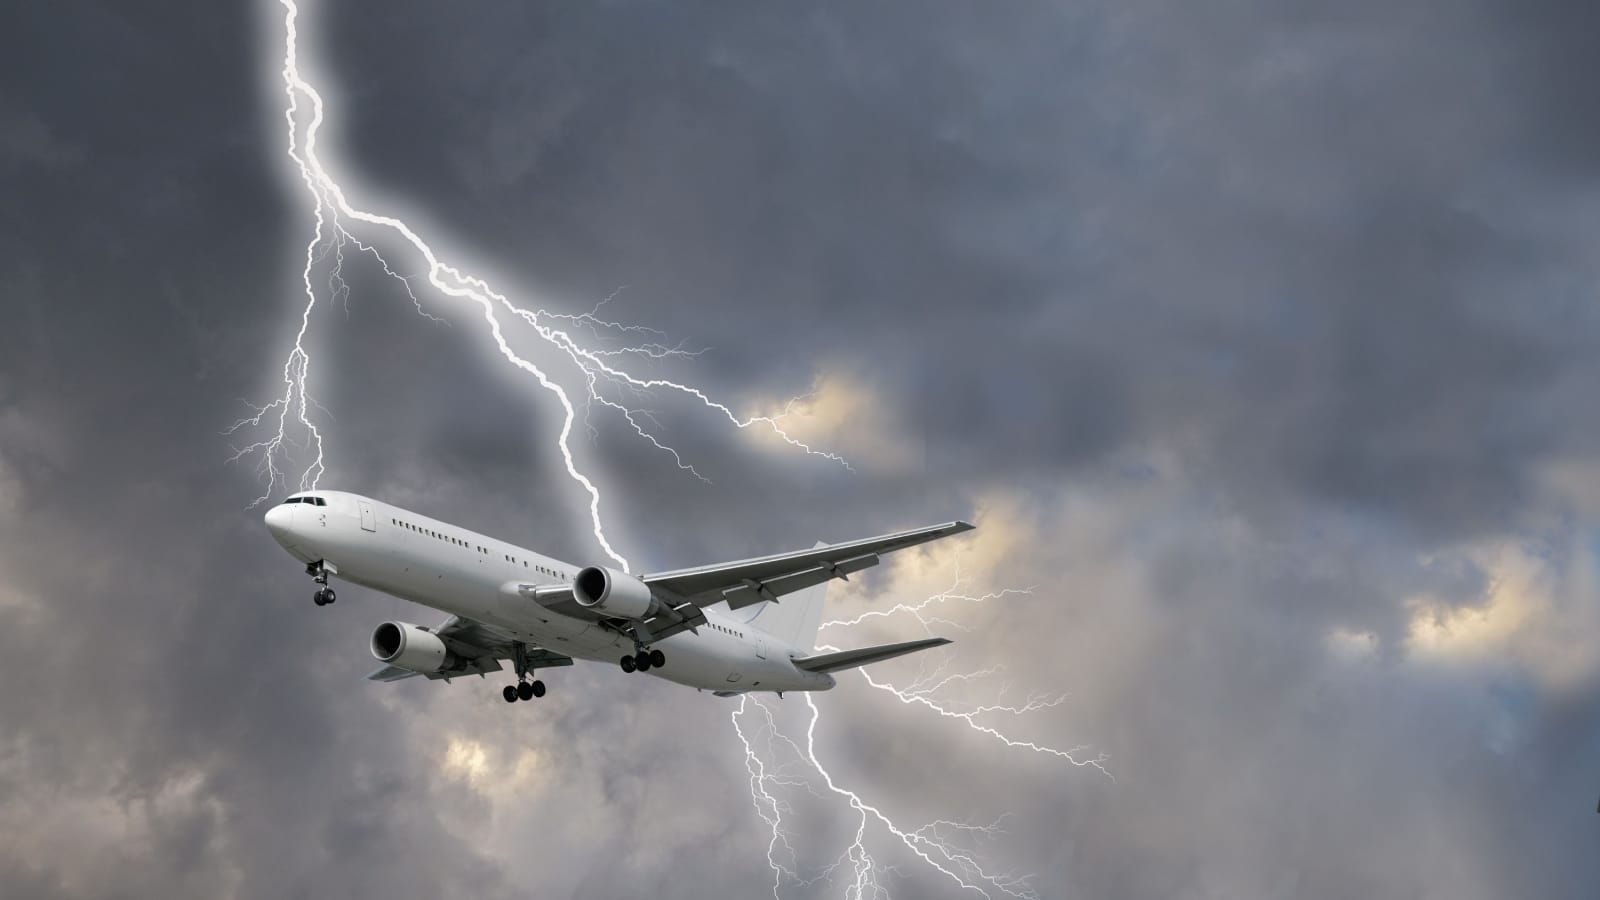 Lightning strike on a passenger plane